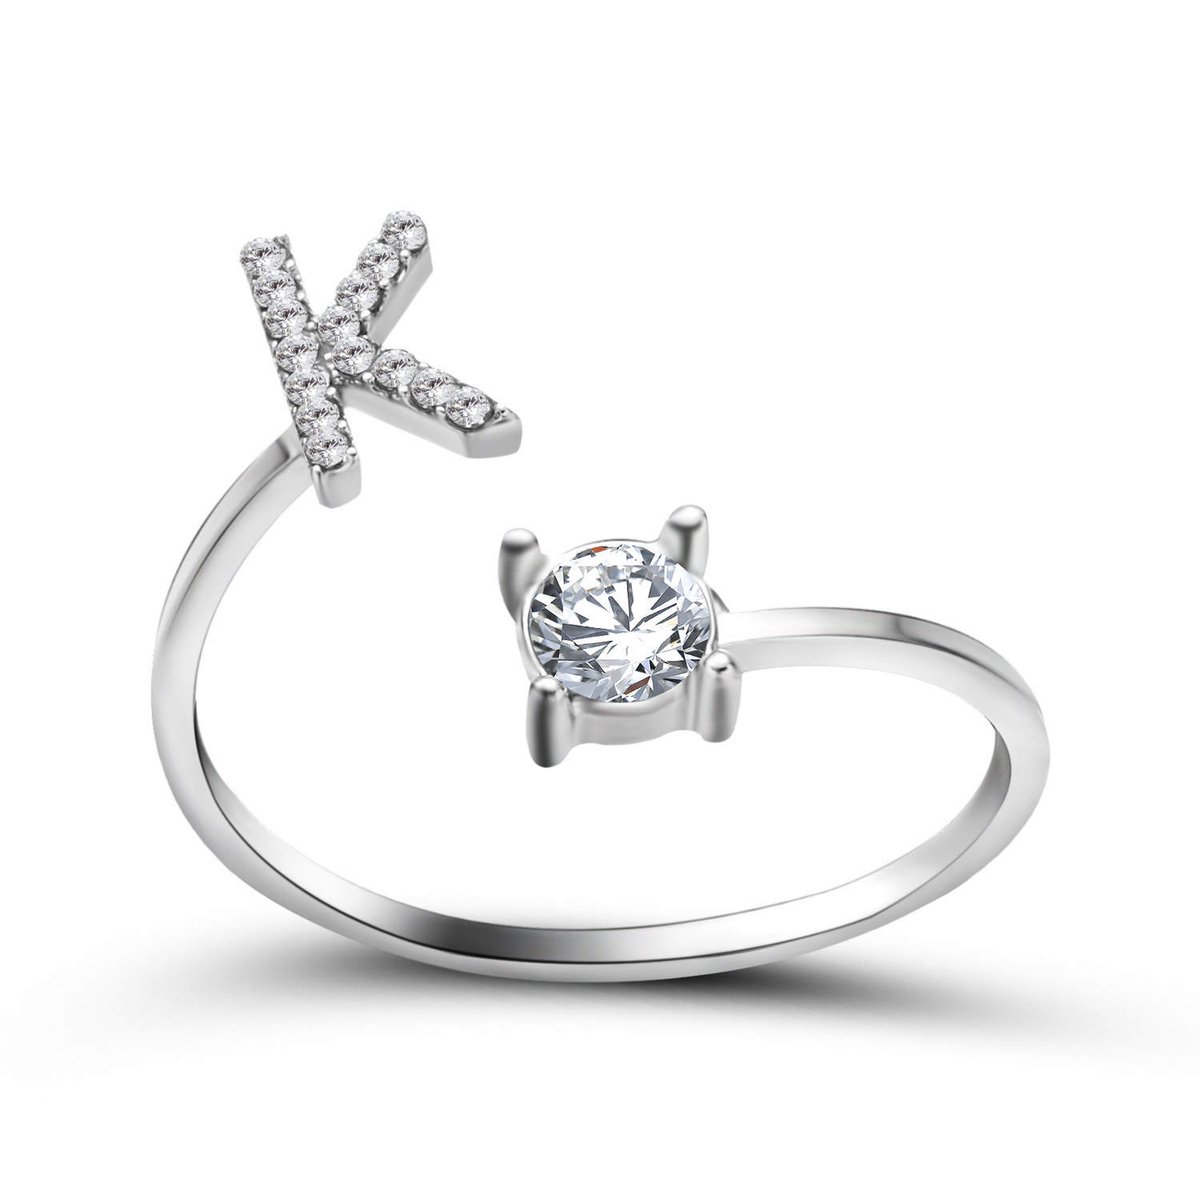 Ring met letter K - Ring met steen - Aanschuifring - Zilver kleurig - Ring Zilver dames - Cadeau voor vriendin - Vrouw - Sieraad meisje - Mooie ring tieners - Alfabet ring K - Ring met initiaal